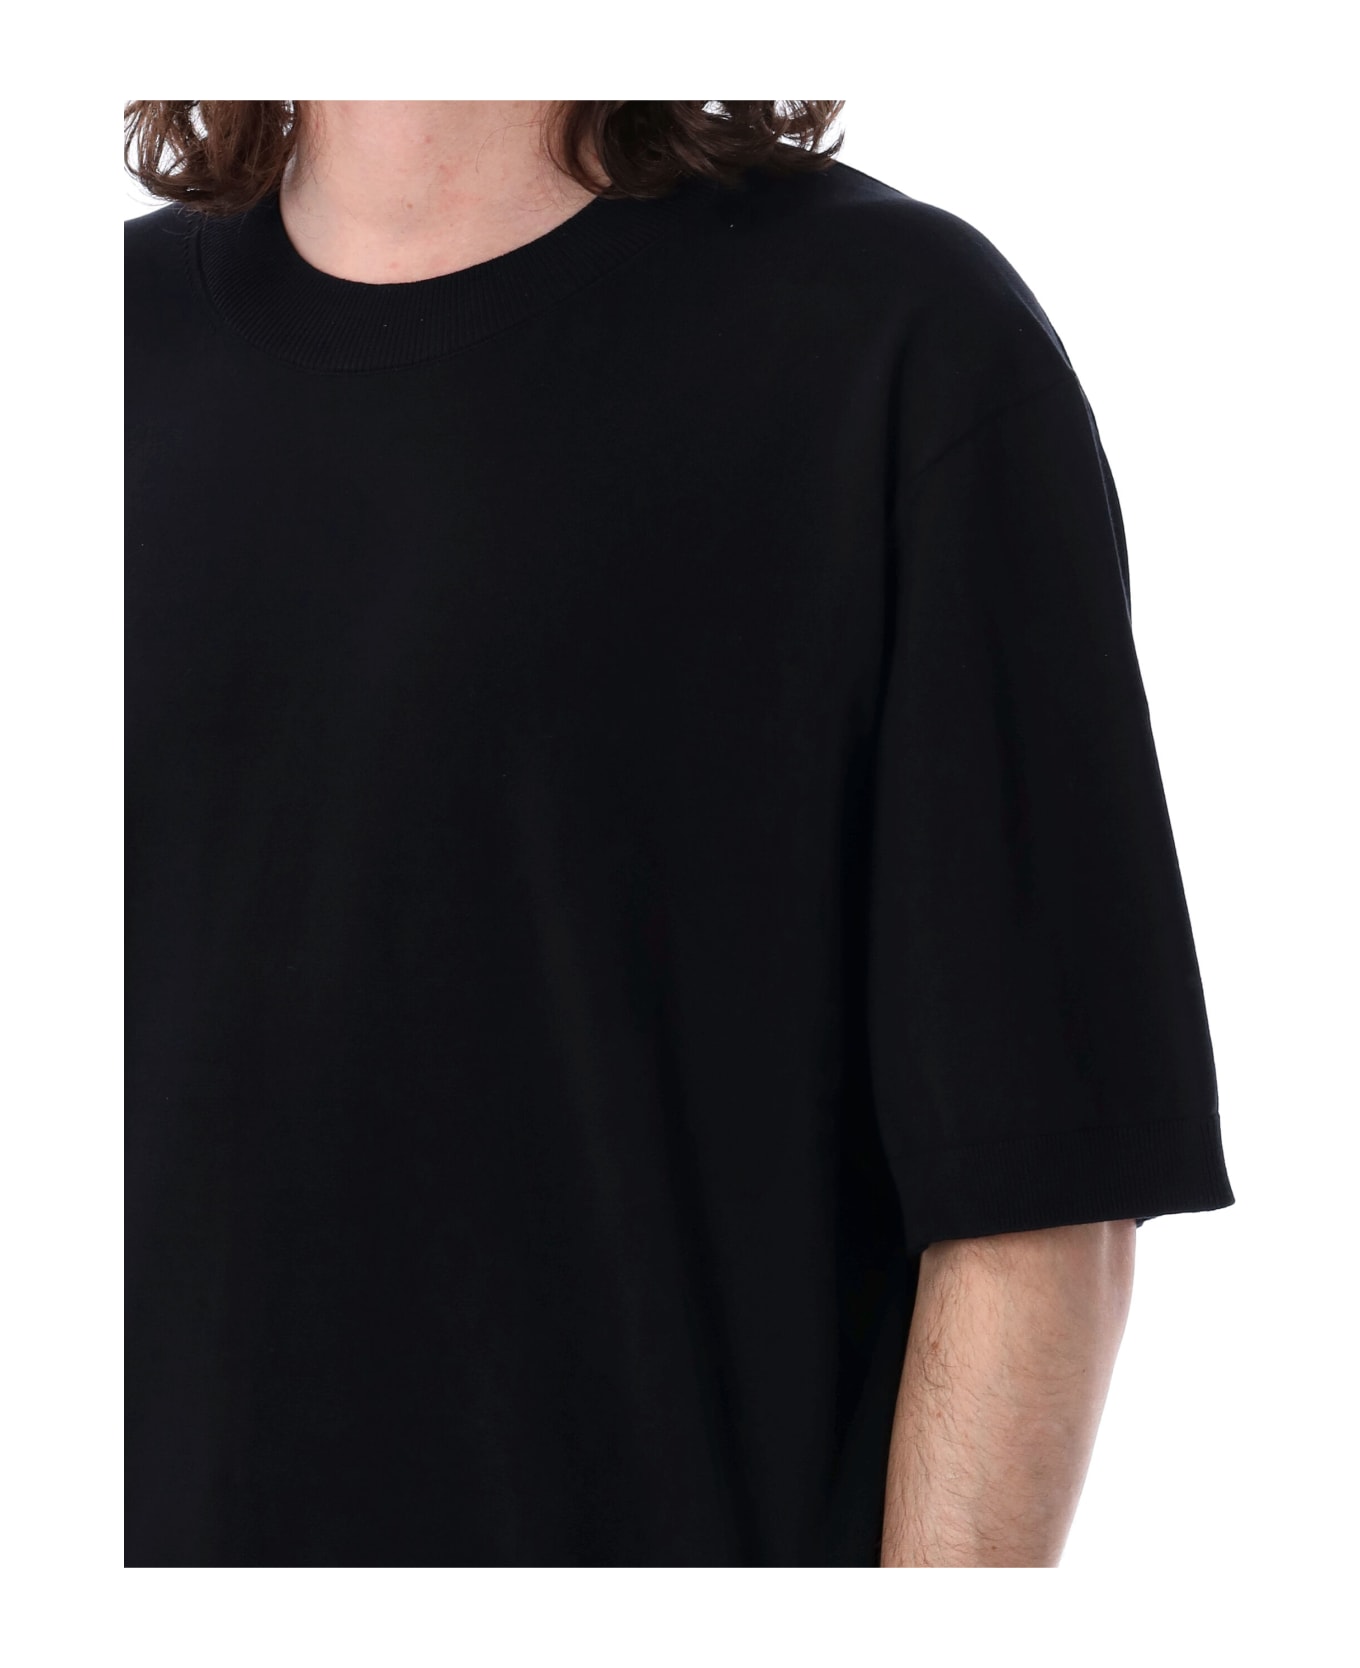 Studio Nicholson Sorono Short Sleeves Shirt - DARKEST NAVY シャツ